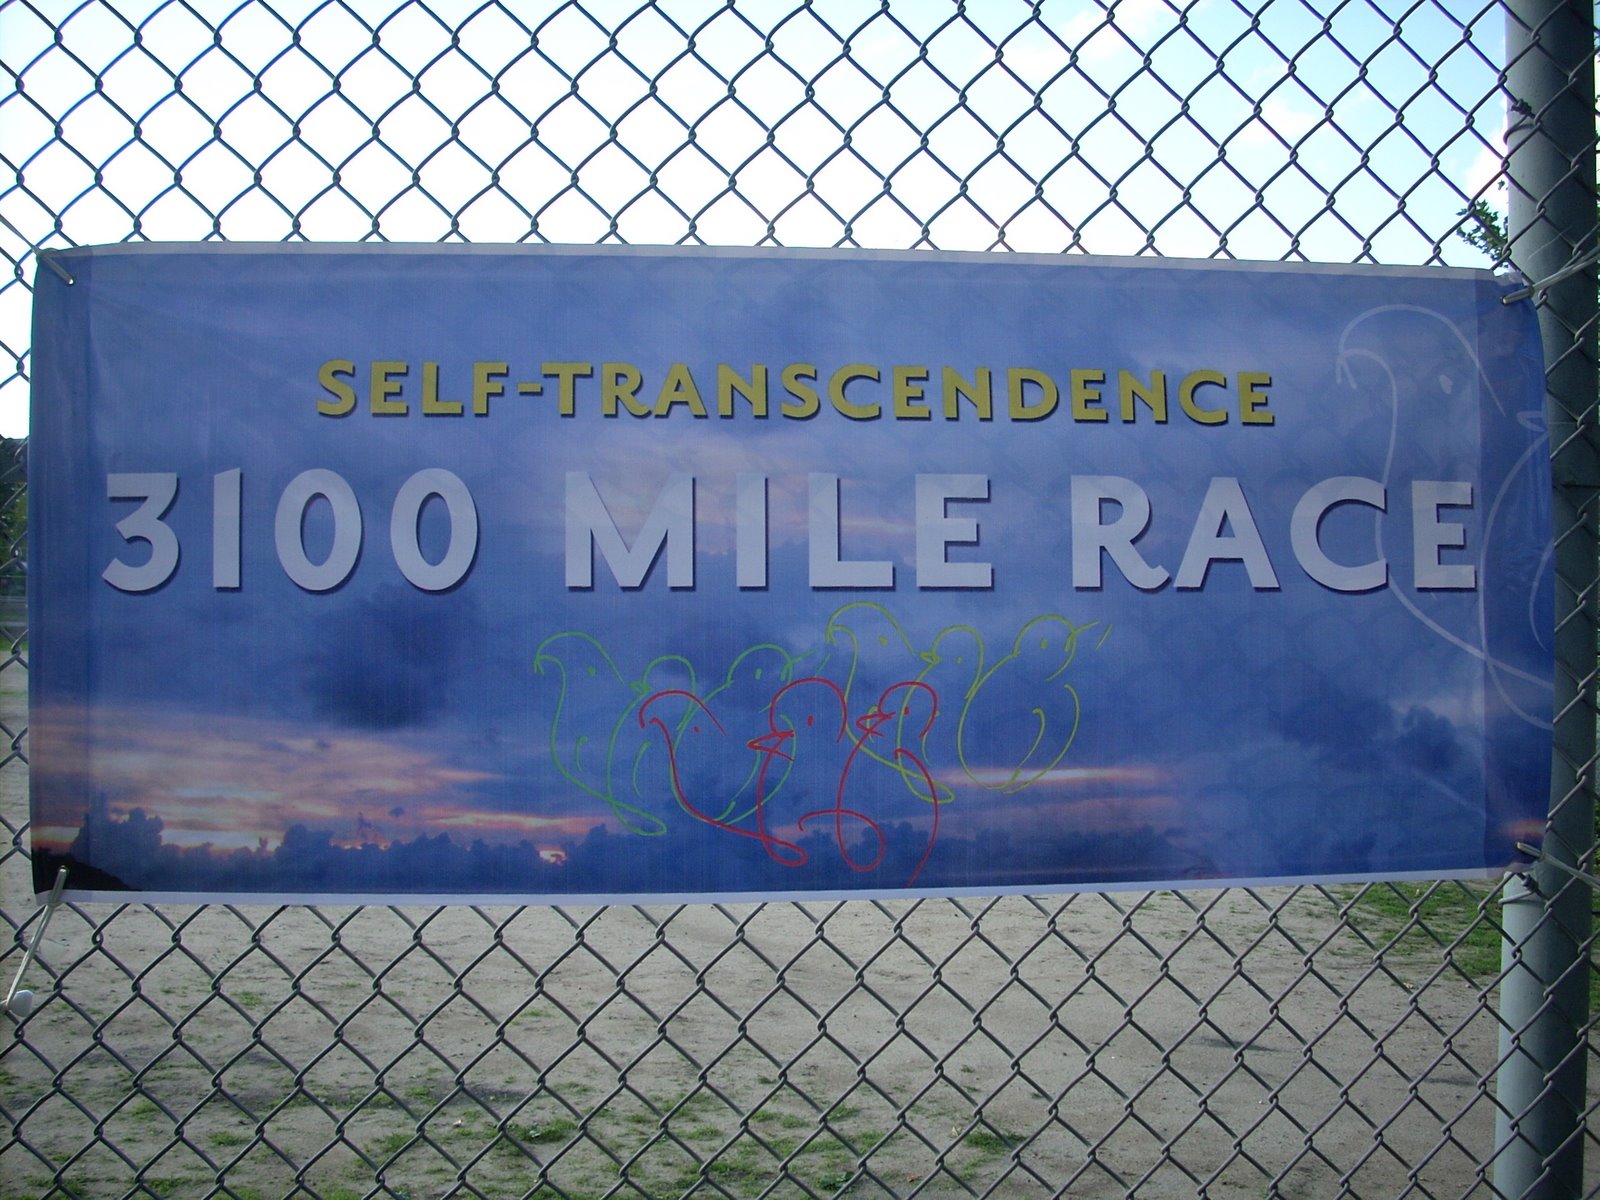 [3100+mile+race+001.jpg]